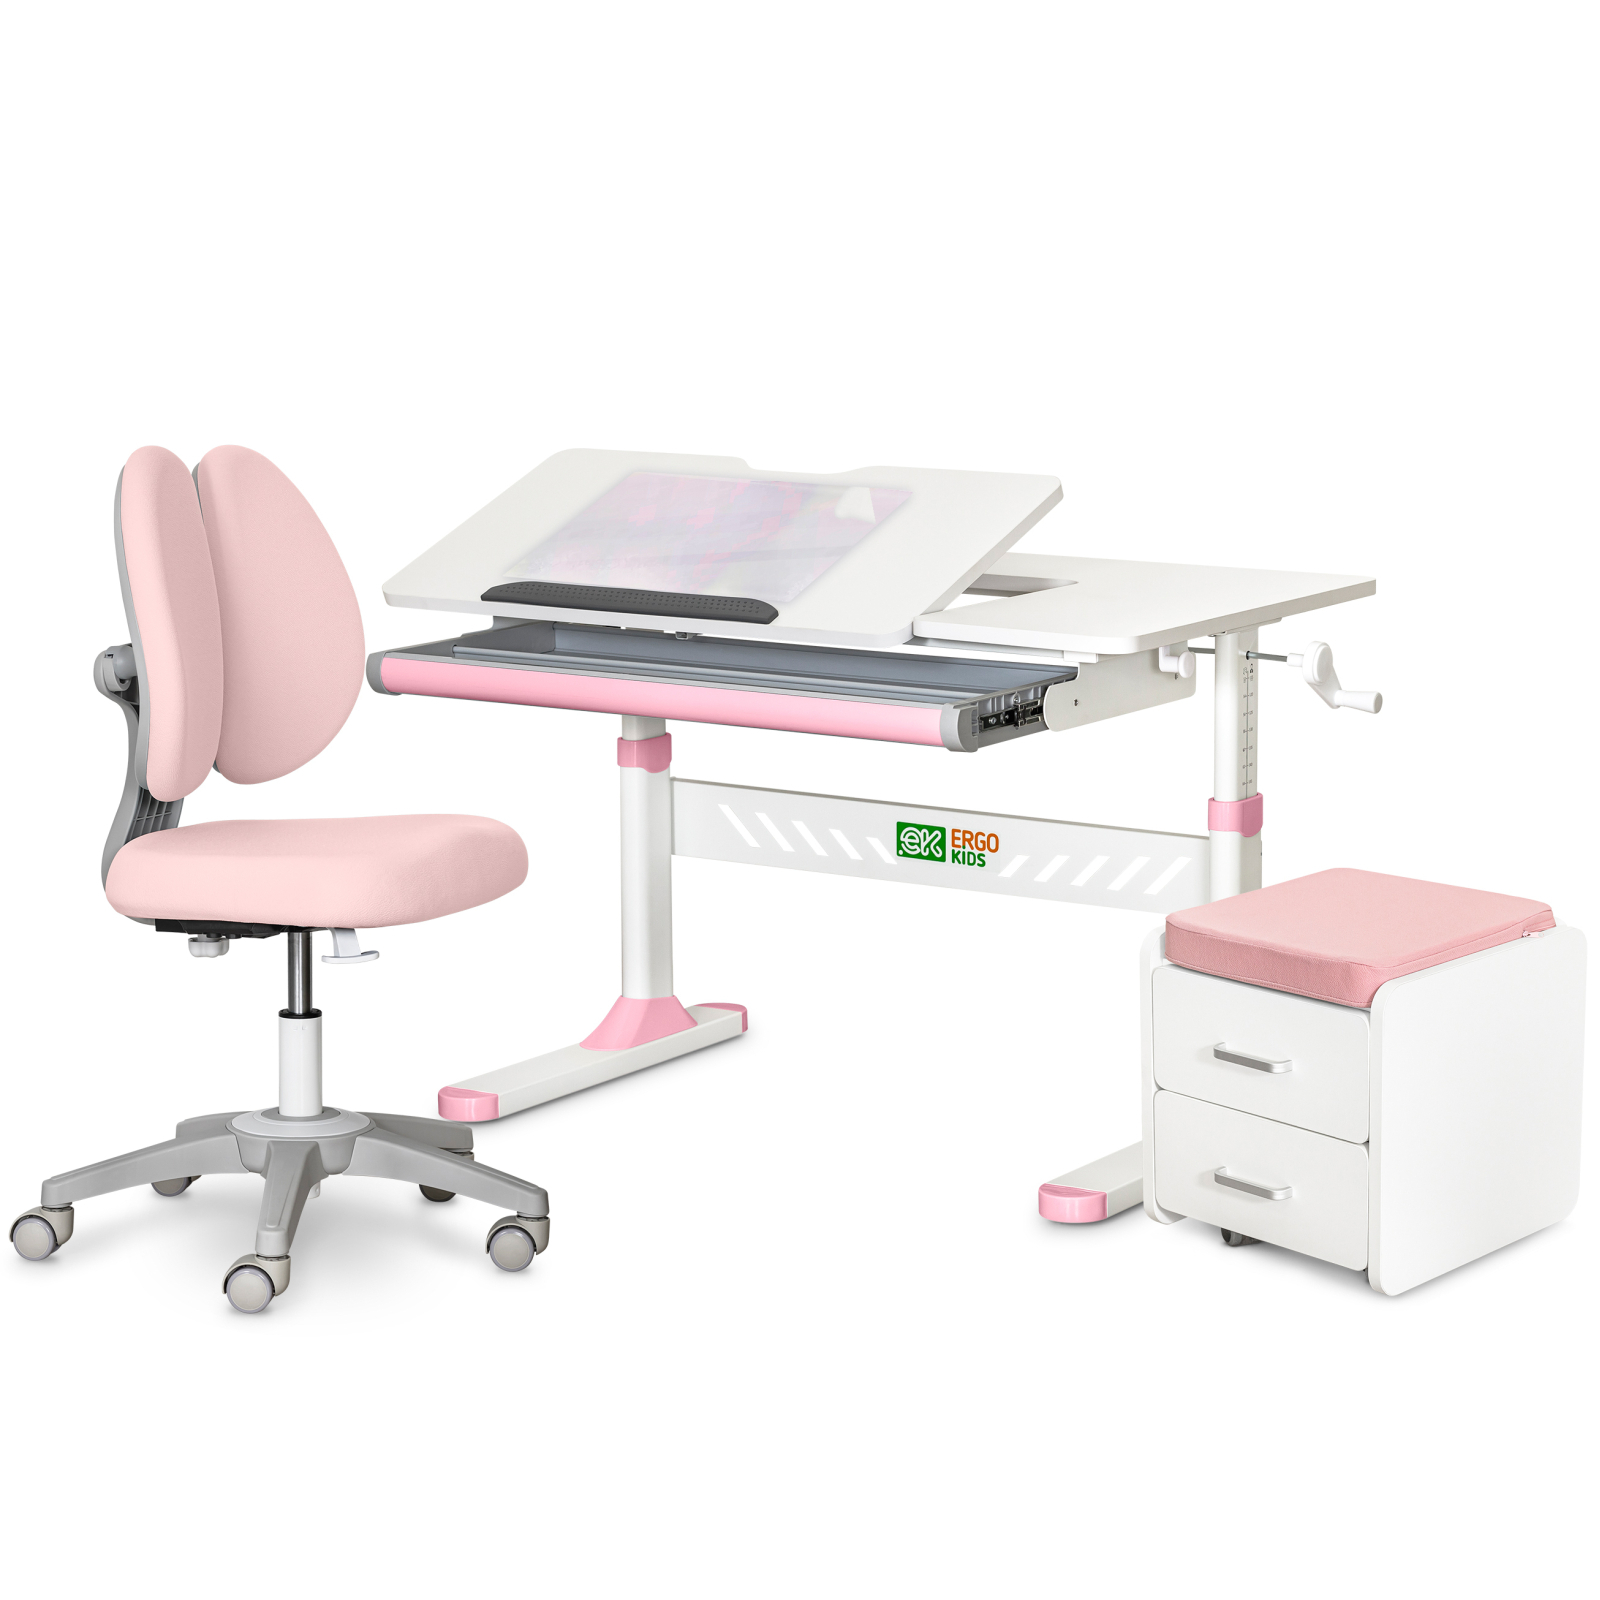 Парта с креслом ErgoKids (L) Pink + тумба (TH-310 + Y-412 Lite + BD C3_PINK)